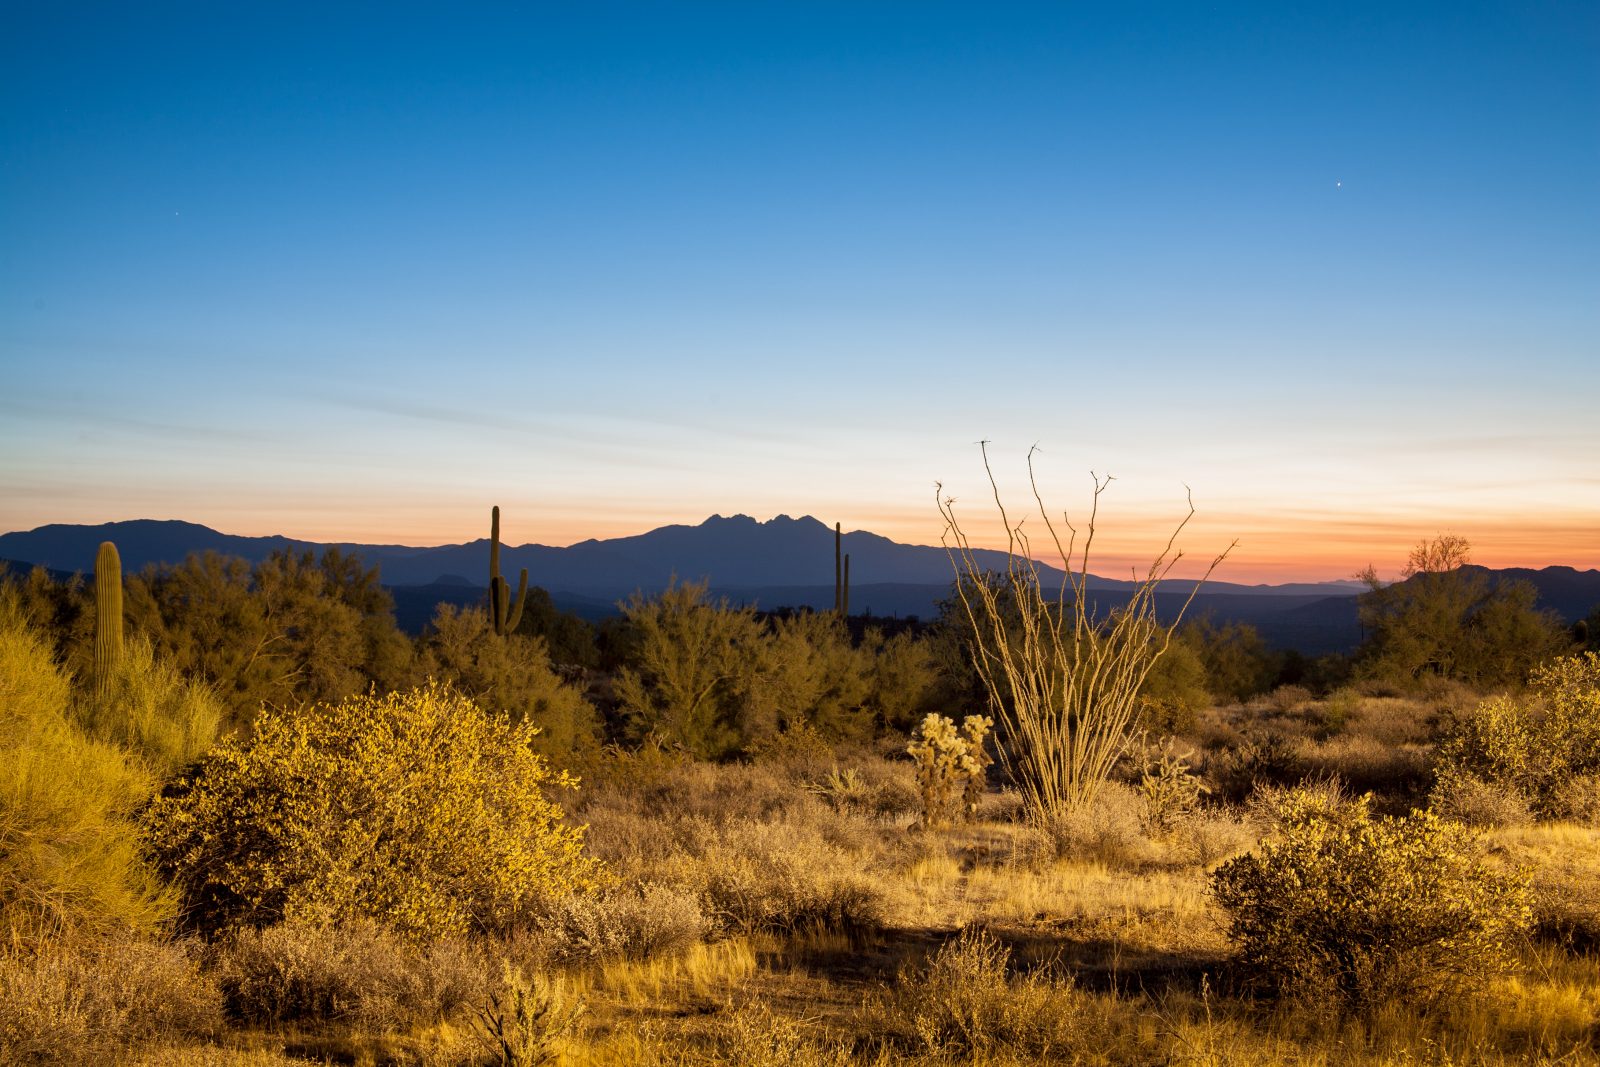 Four Peaks of the Mazatzal Mountains, Arizona